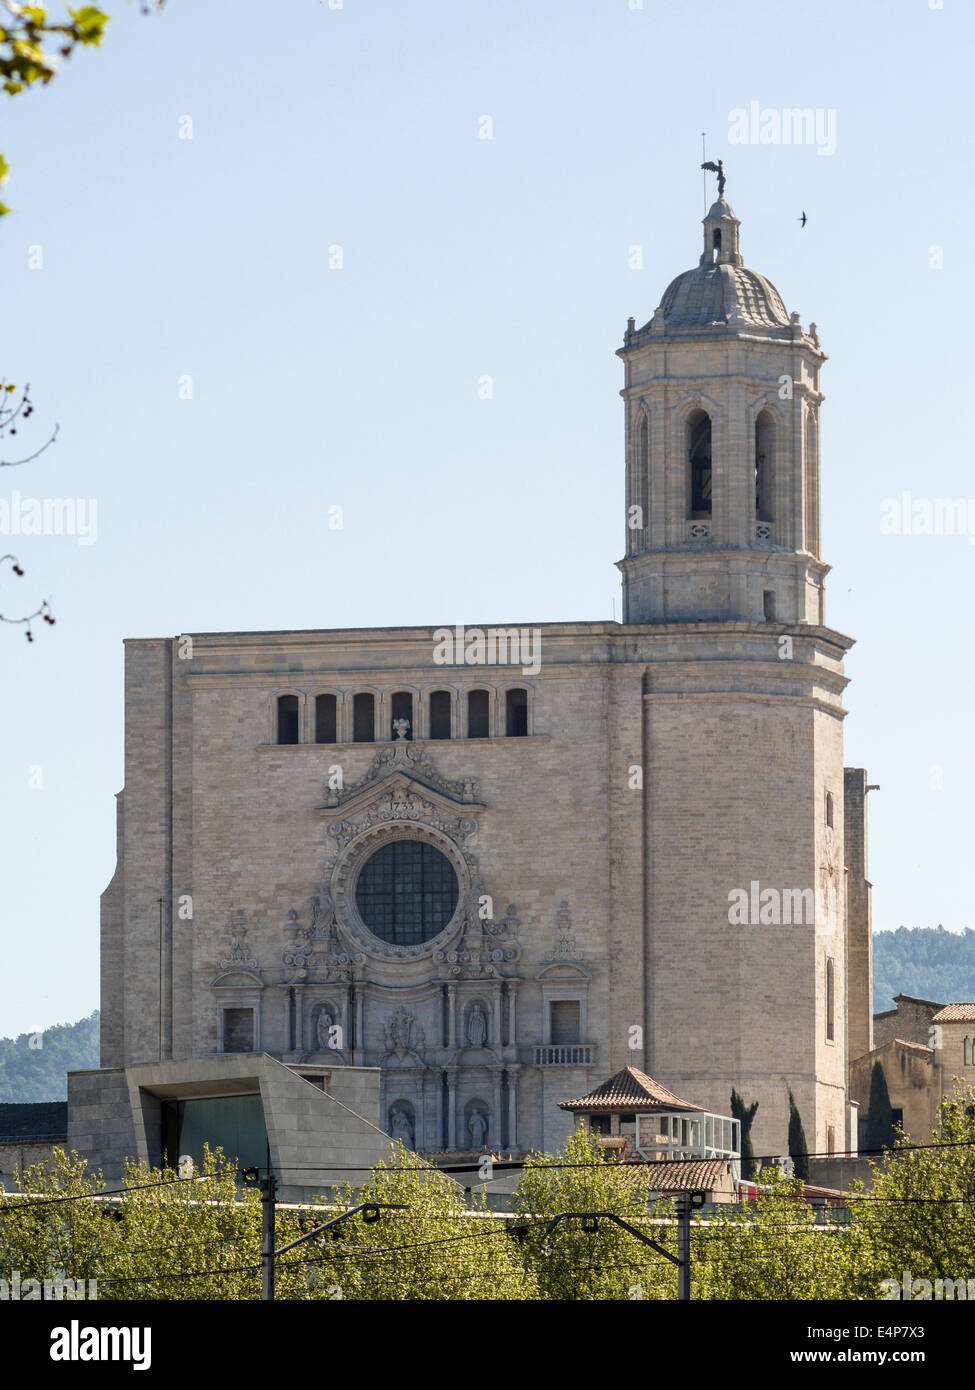 La Catedral de Girona con reloj y Campanario. La Catedral de Girona con su torre domina el horizonte desde una distancia. Foto de stock